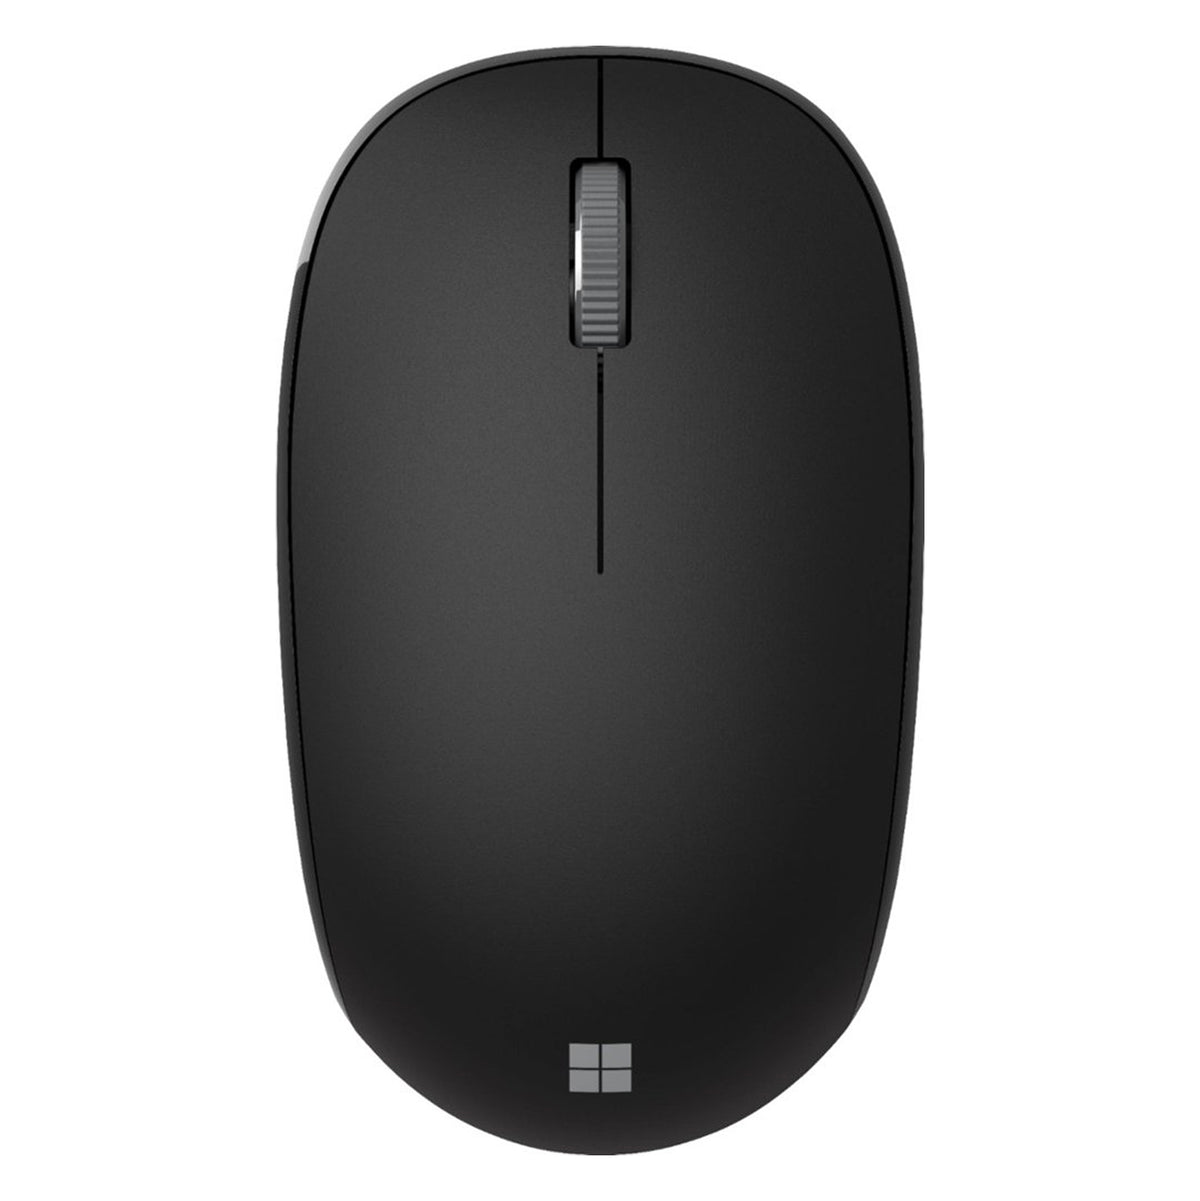 Mouse Inalámbrico Microsoft Bluetooth, sensor de seguimiento rápido, tres botones, bluetooth 5.0 LE, batería hasta 12 meses, negro - Multimax